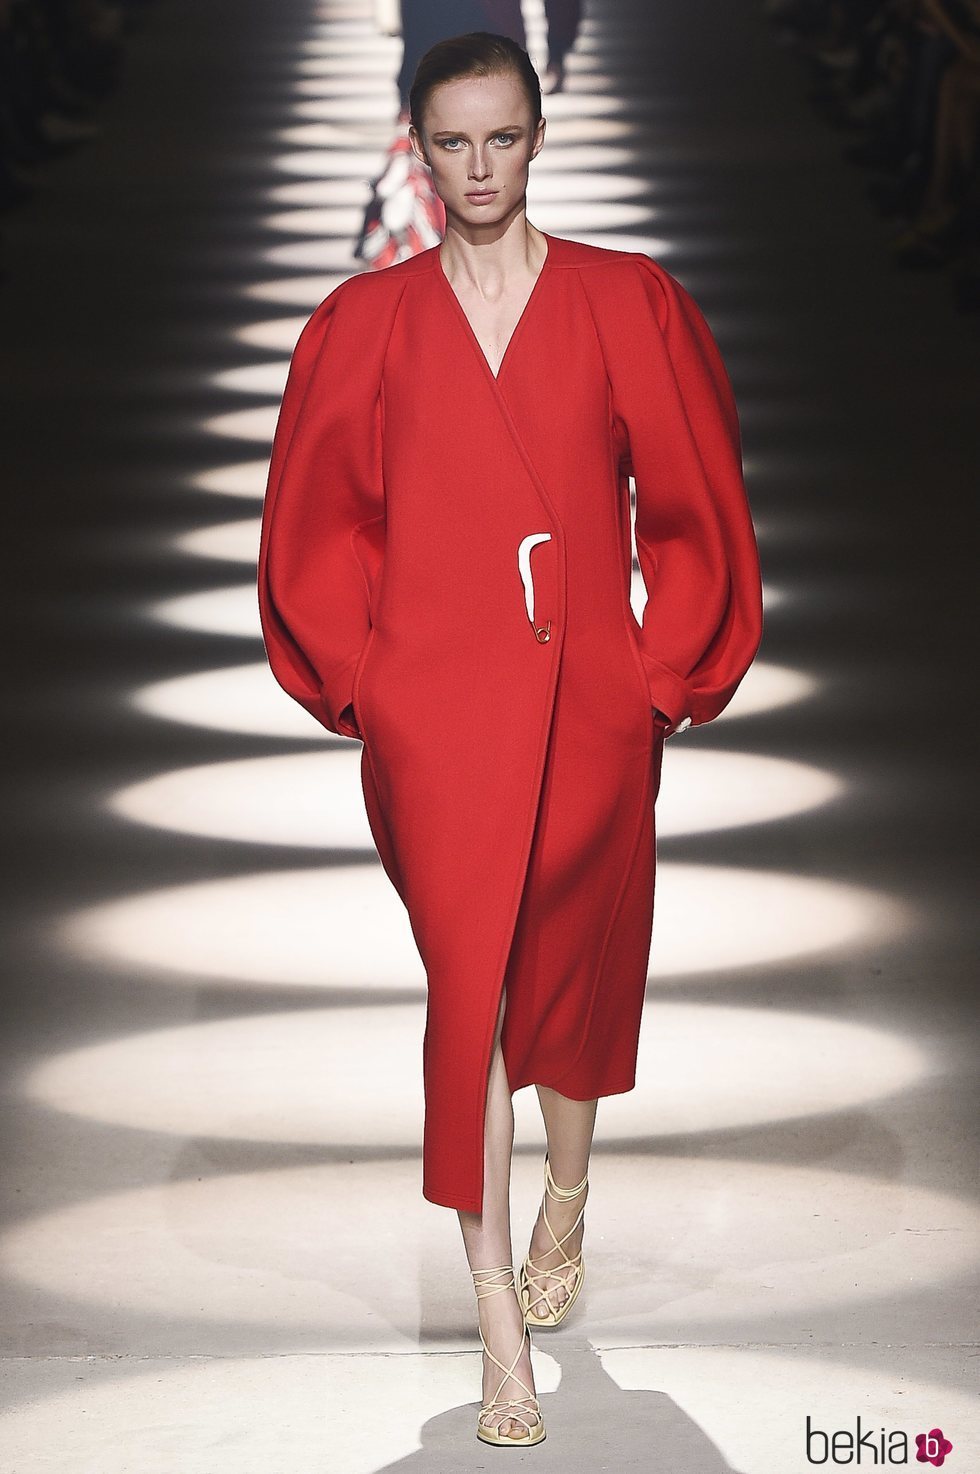 Vestido rojo con cierre de broche otoño/ invierno 2020-2021 de Givenchy